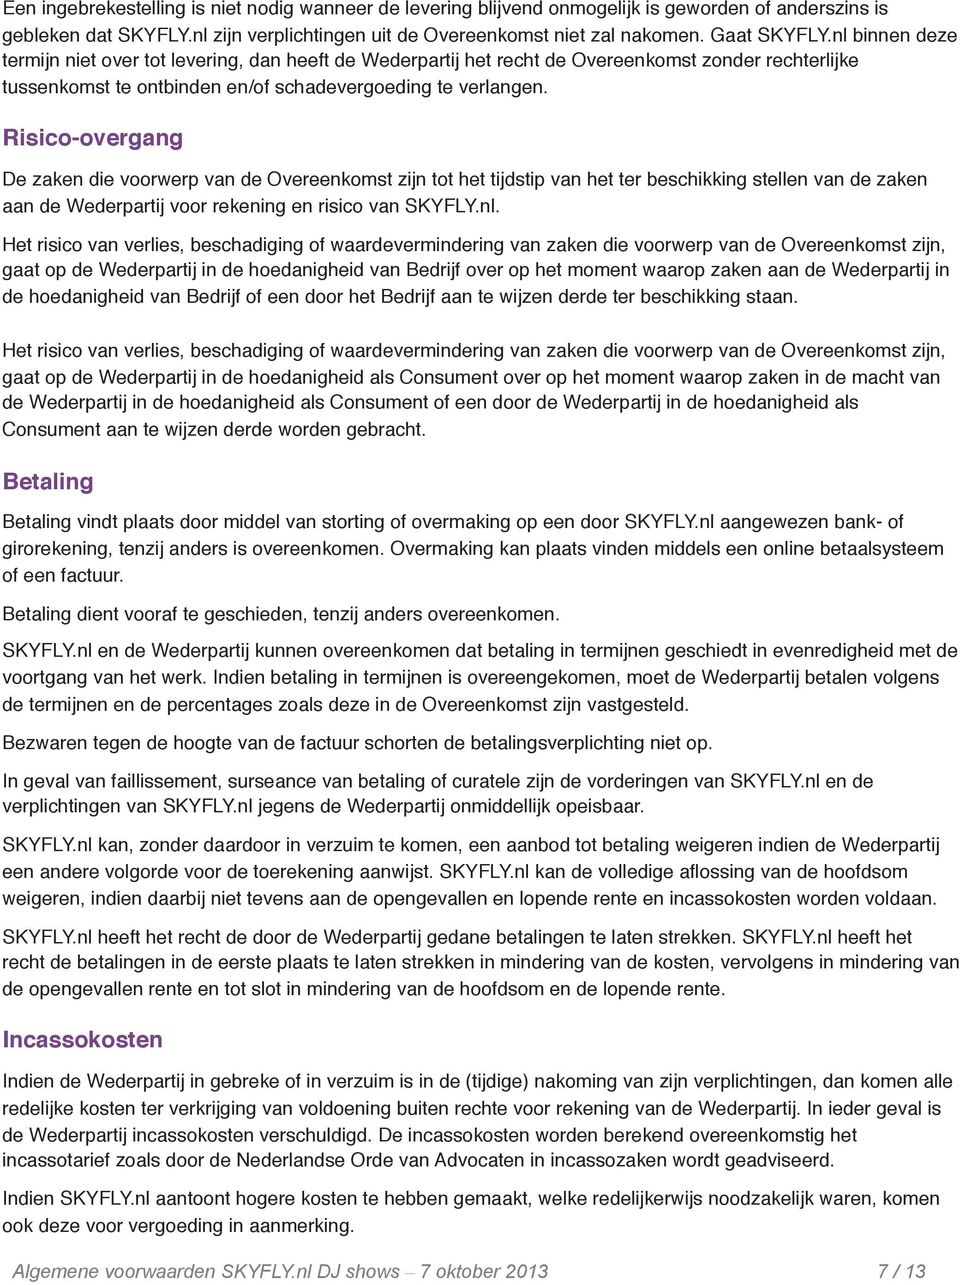 Risico-overgang De zaken die voorwerp van de Overeenkomst zijn tot het tijdstip van het ter beschikking stellen van de zaken aan de Wederpartij voor rekening en risico van SKYFLY.nl.